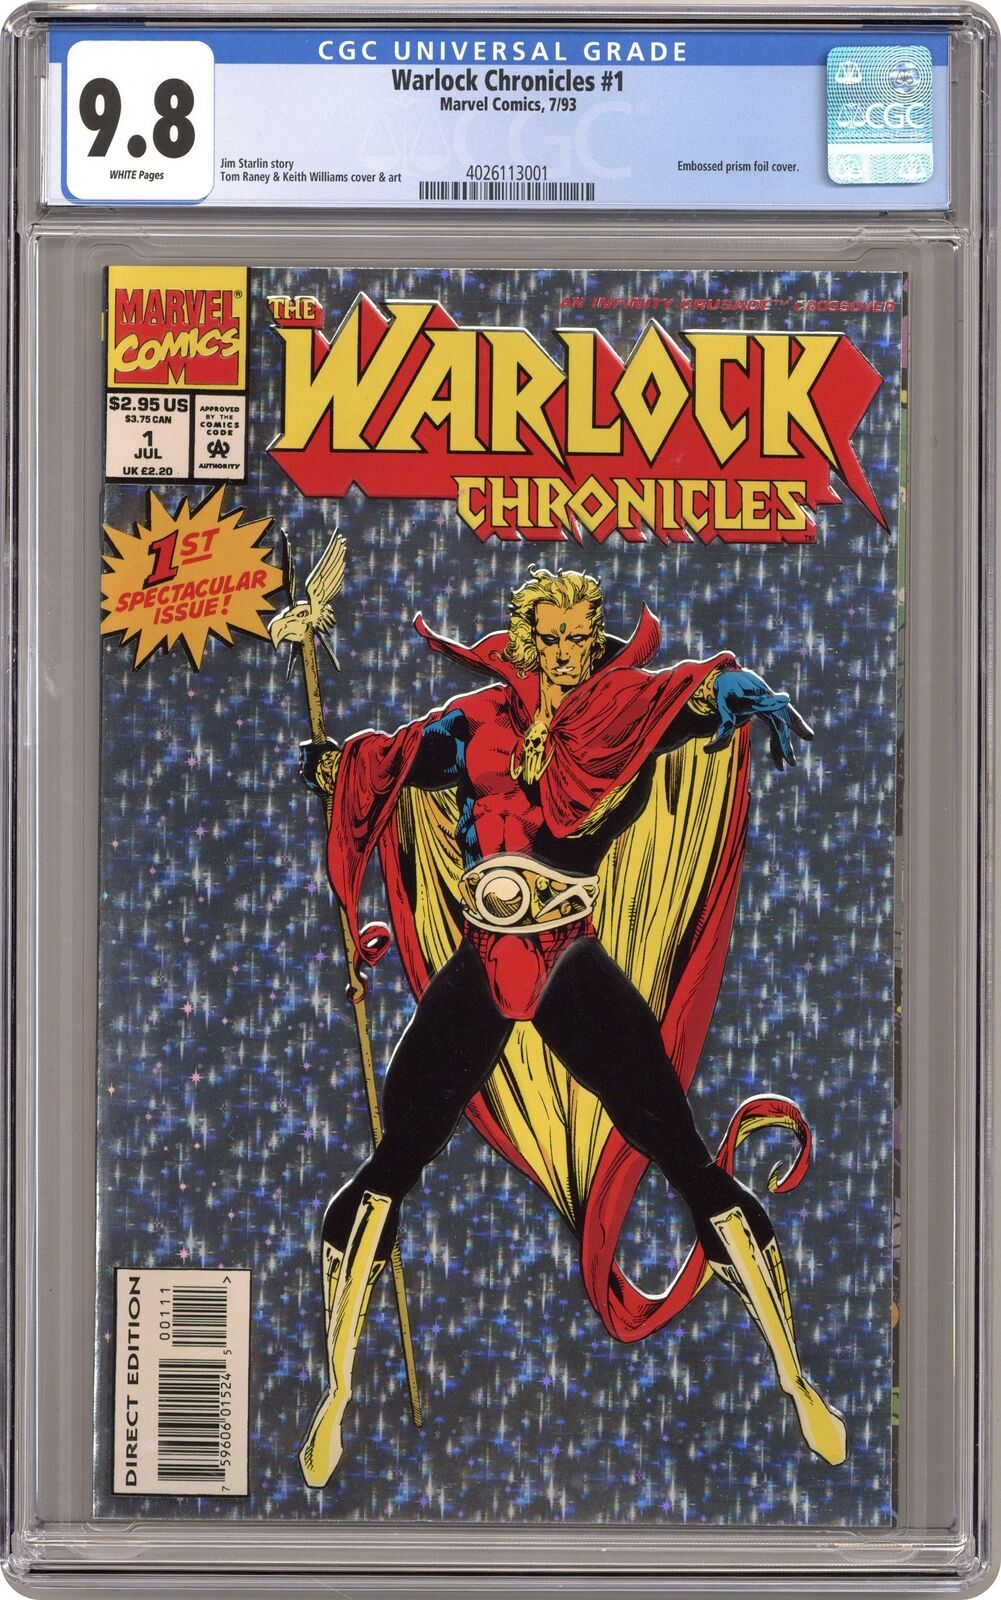 Warlock Chronicles #1 CGC 9.8 1993 4026113001